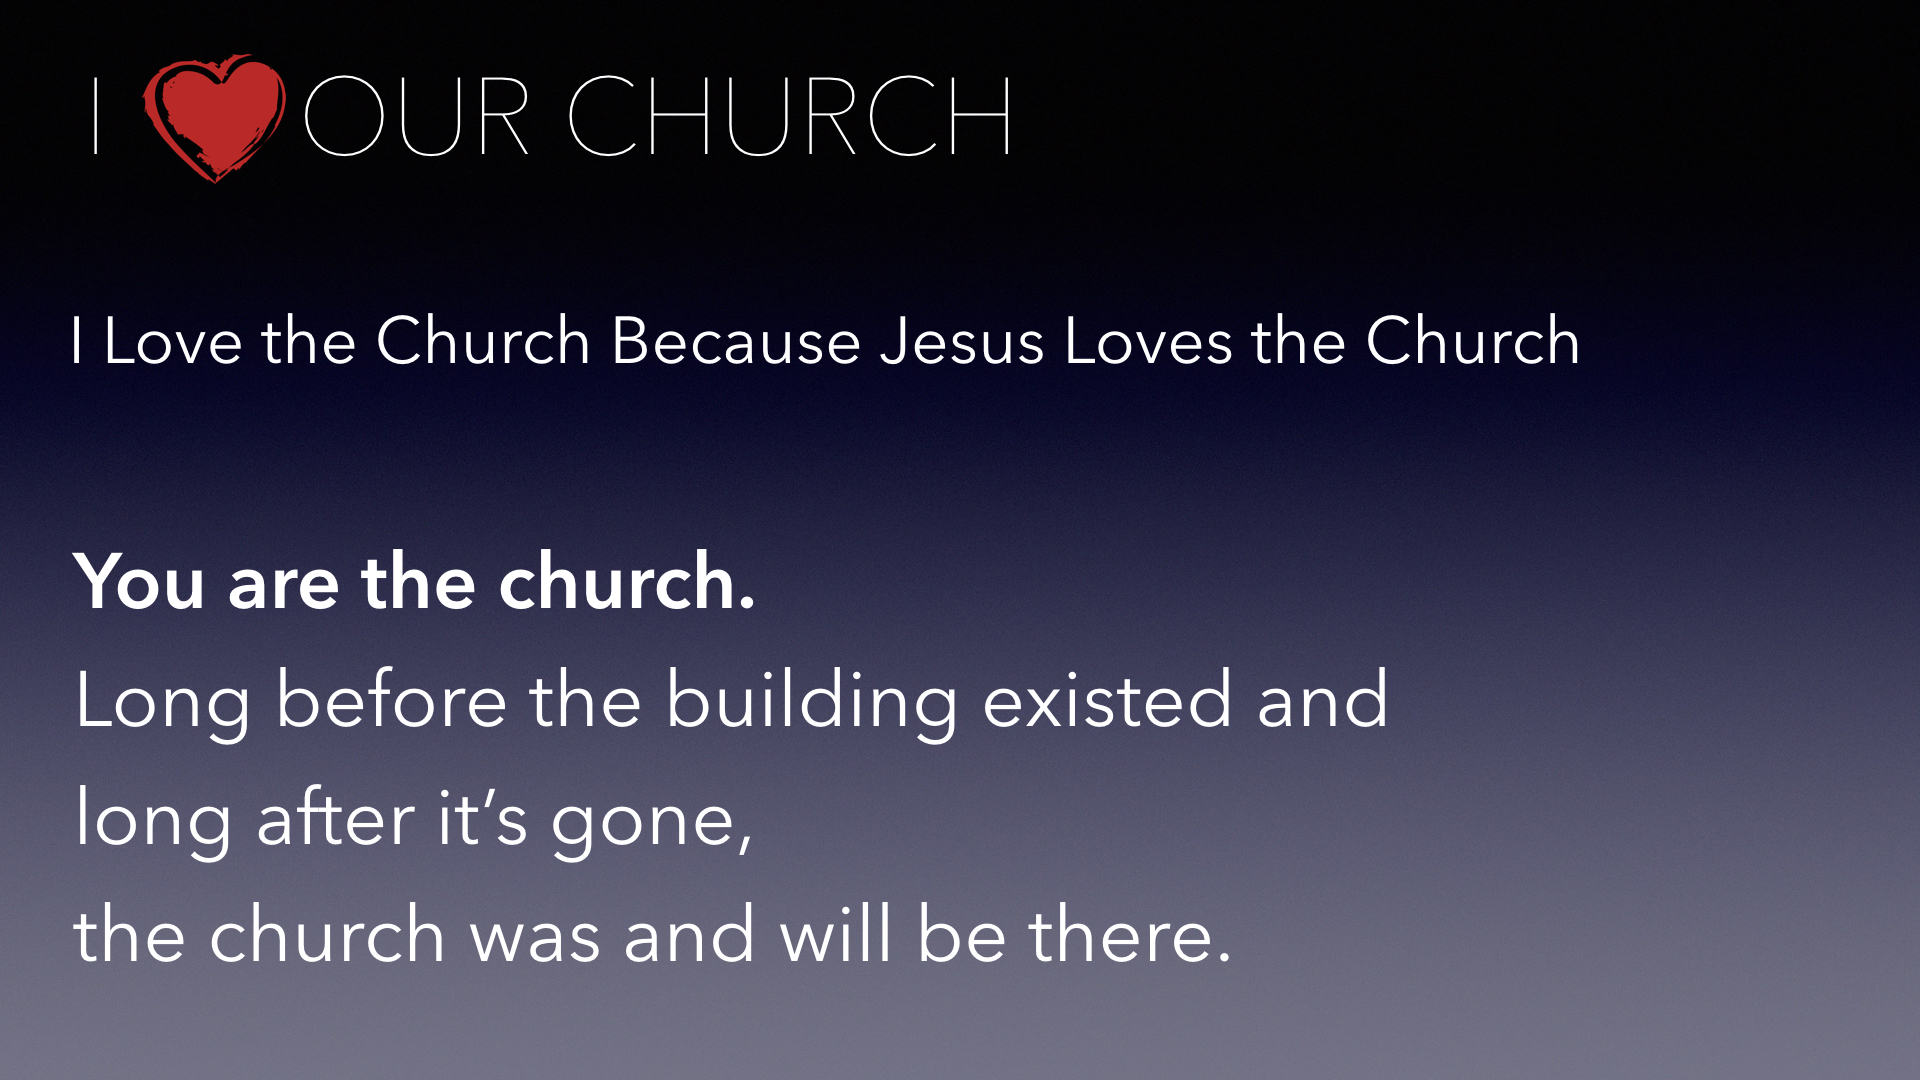 i-love-our-church-005